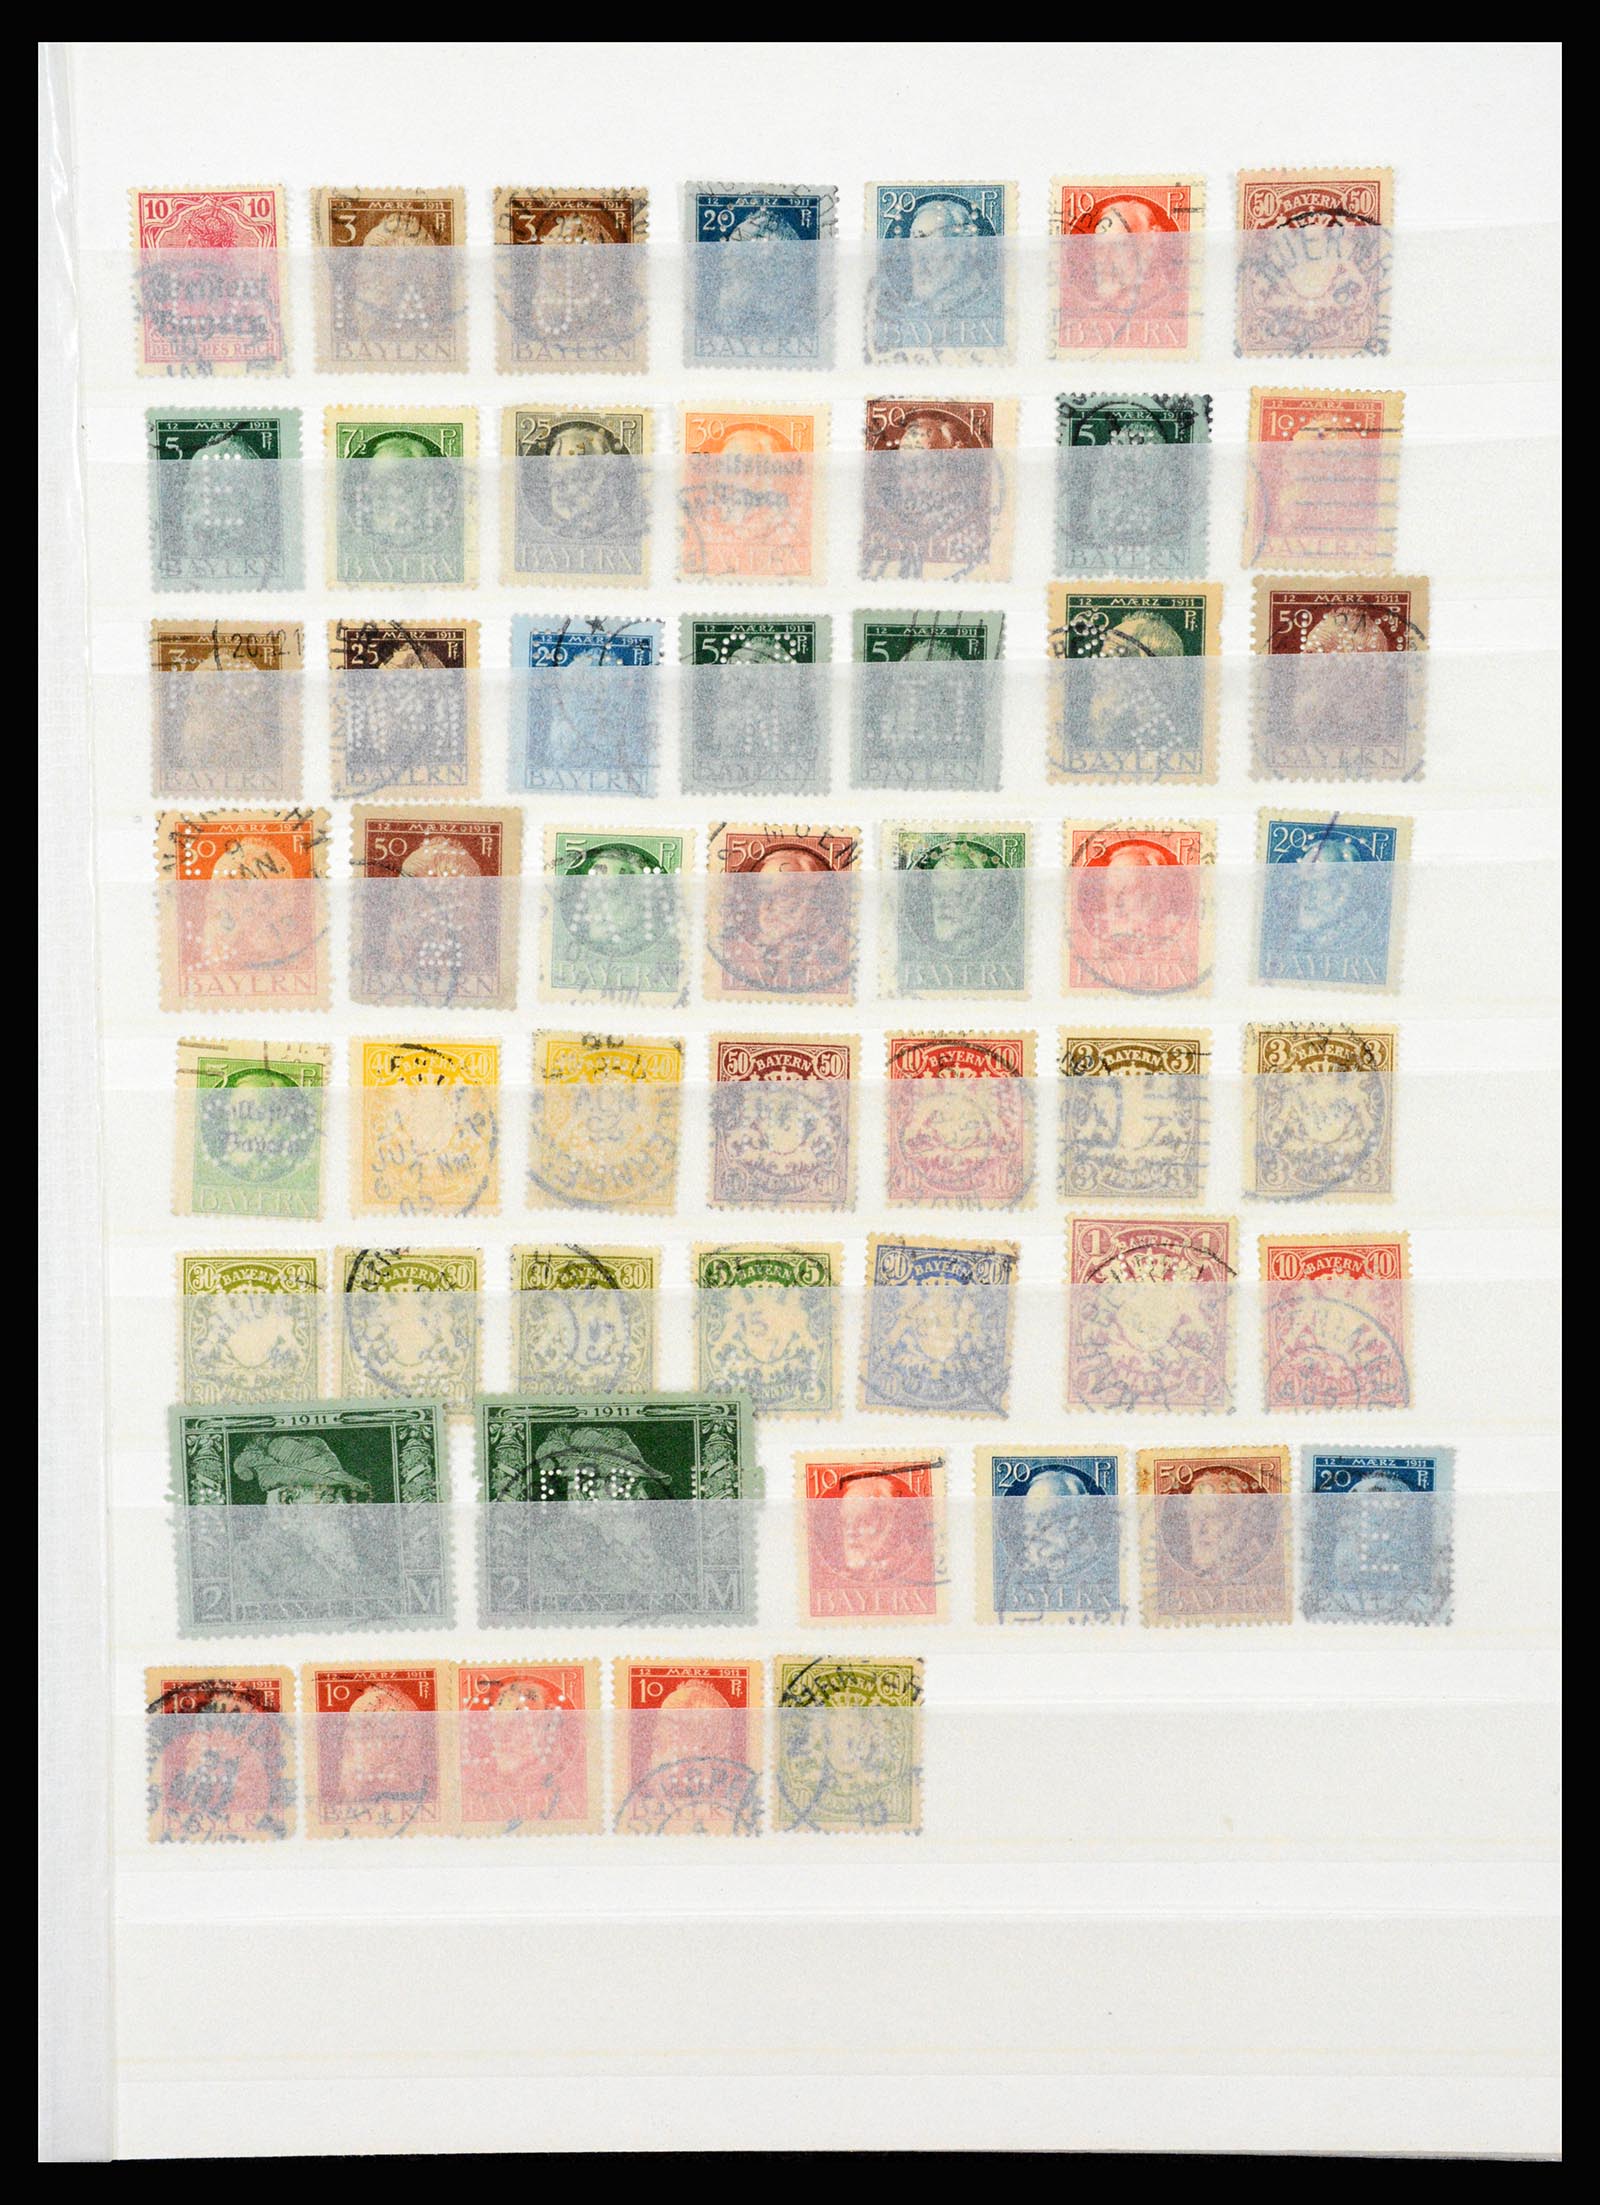 37254 003 - Stamp collection 37254 German Reich perfins 1900-1945.